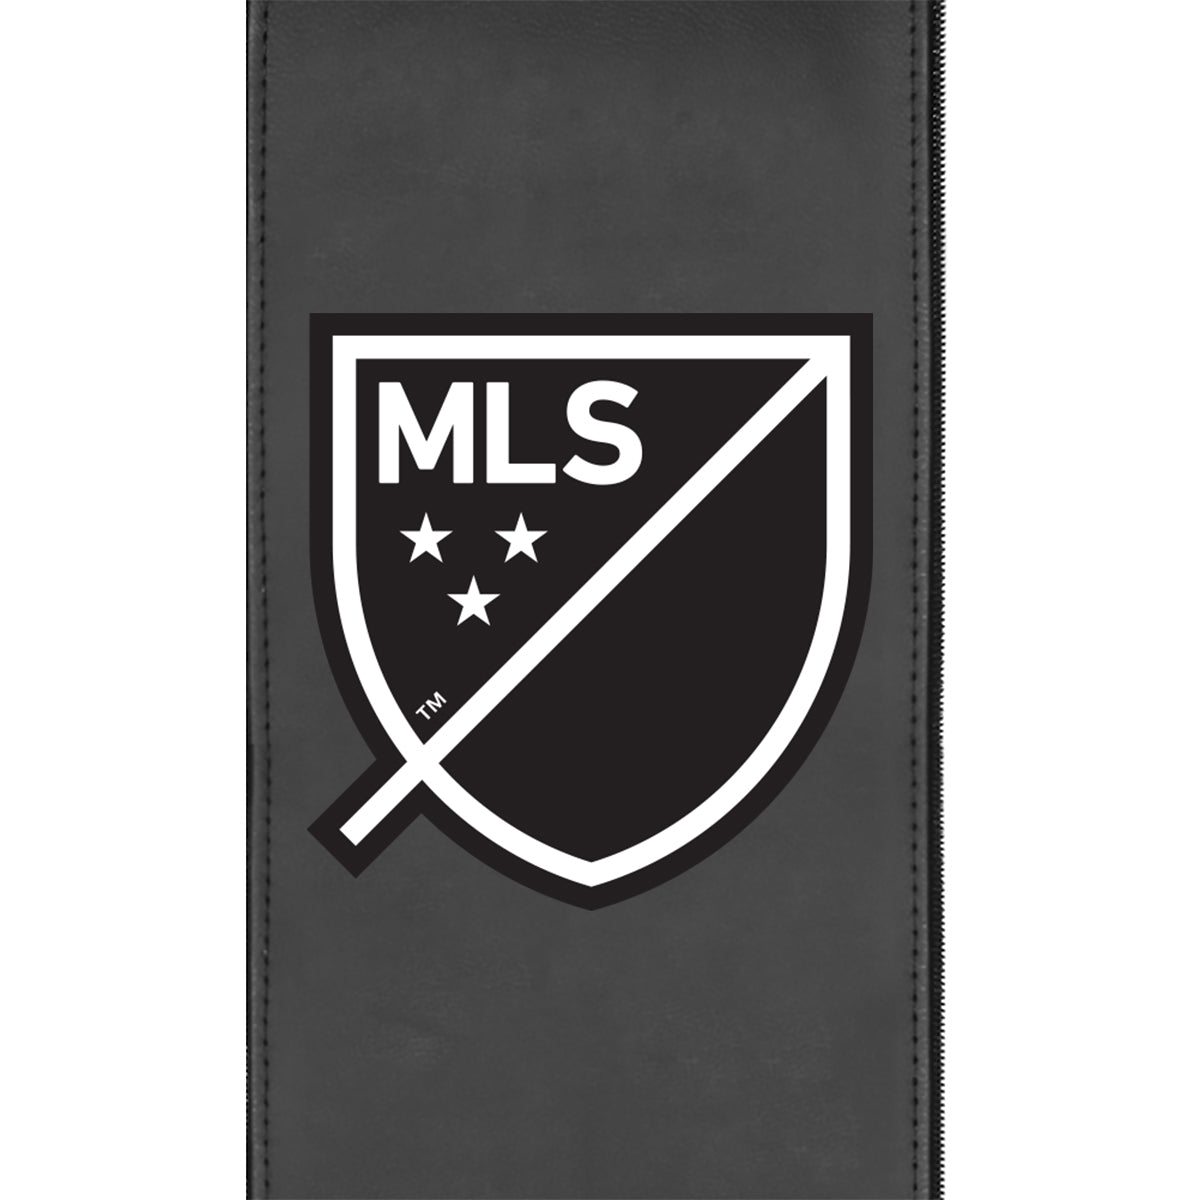 Curve Task Chair with Major League Soccer Alternate Logo